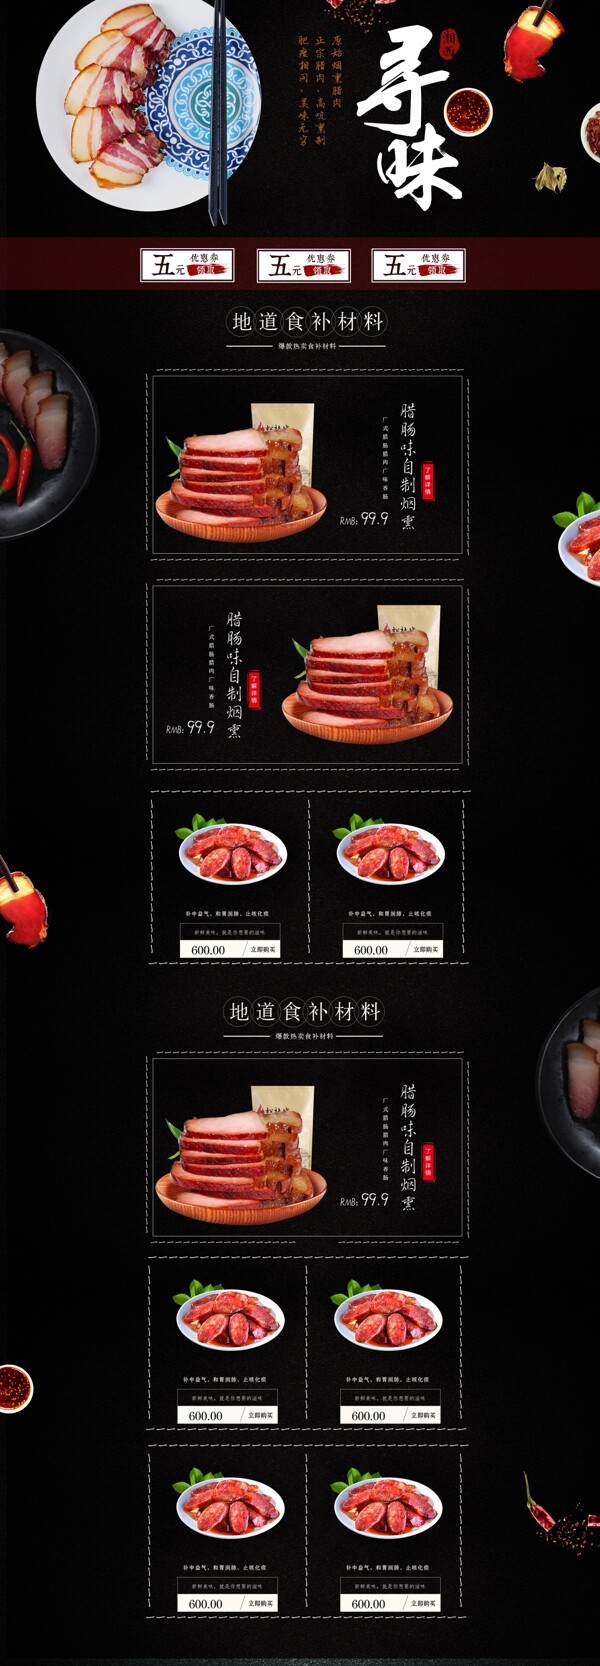 中国古典风格腊肉淘宝京首页模板